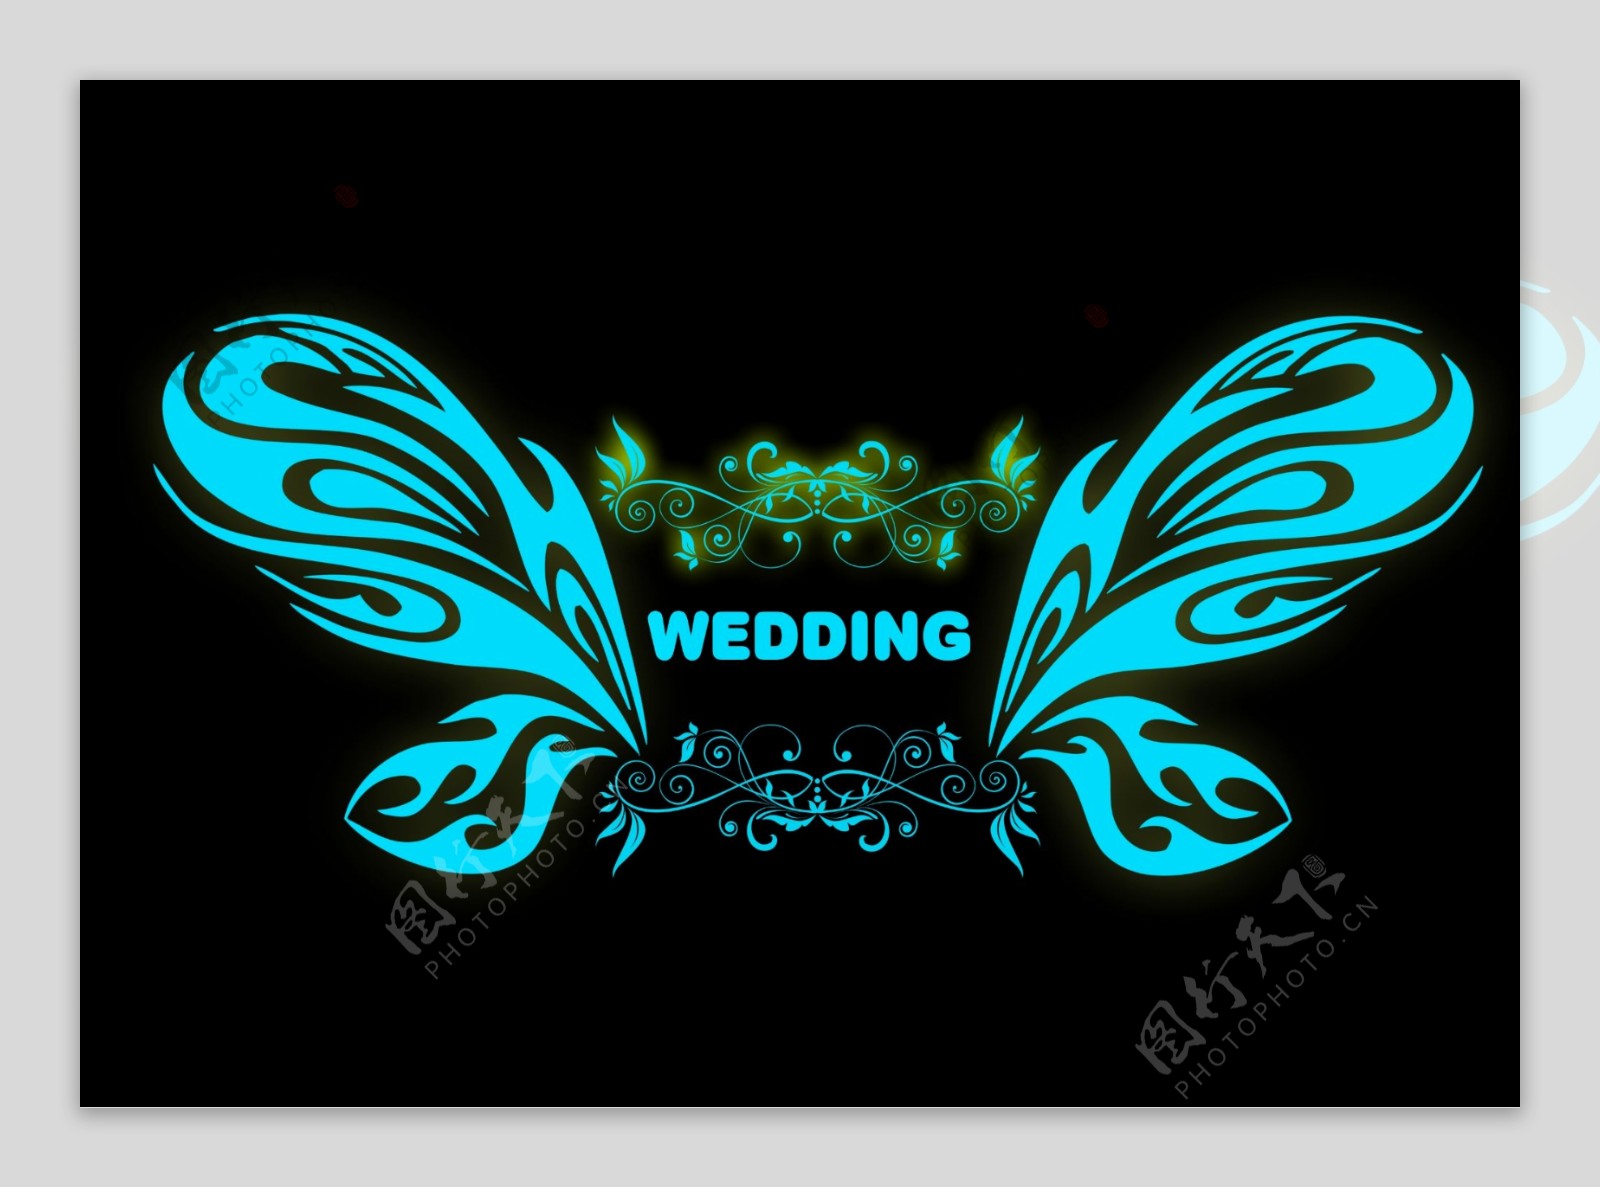 荧光水蓝婚礼logo